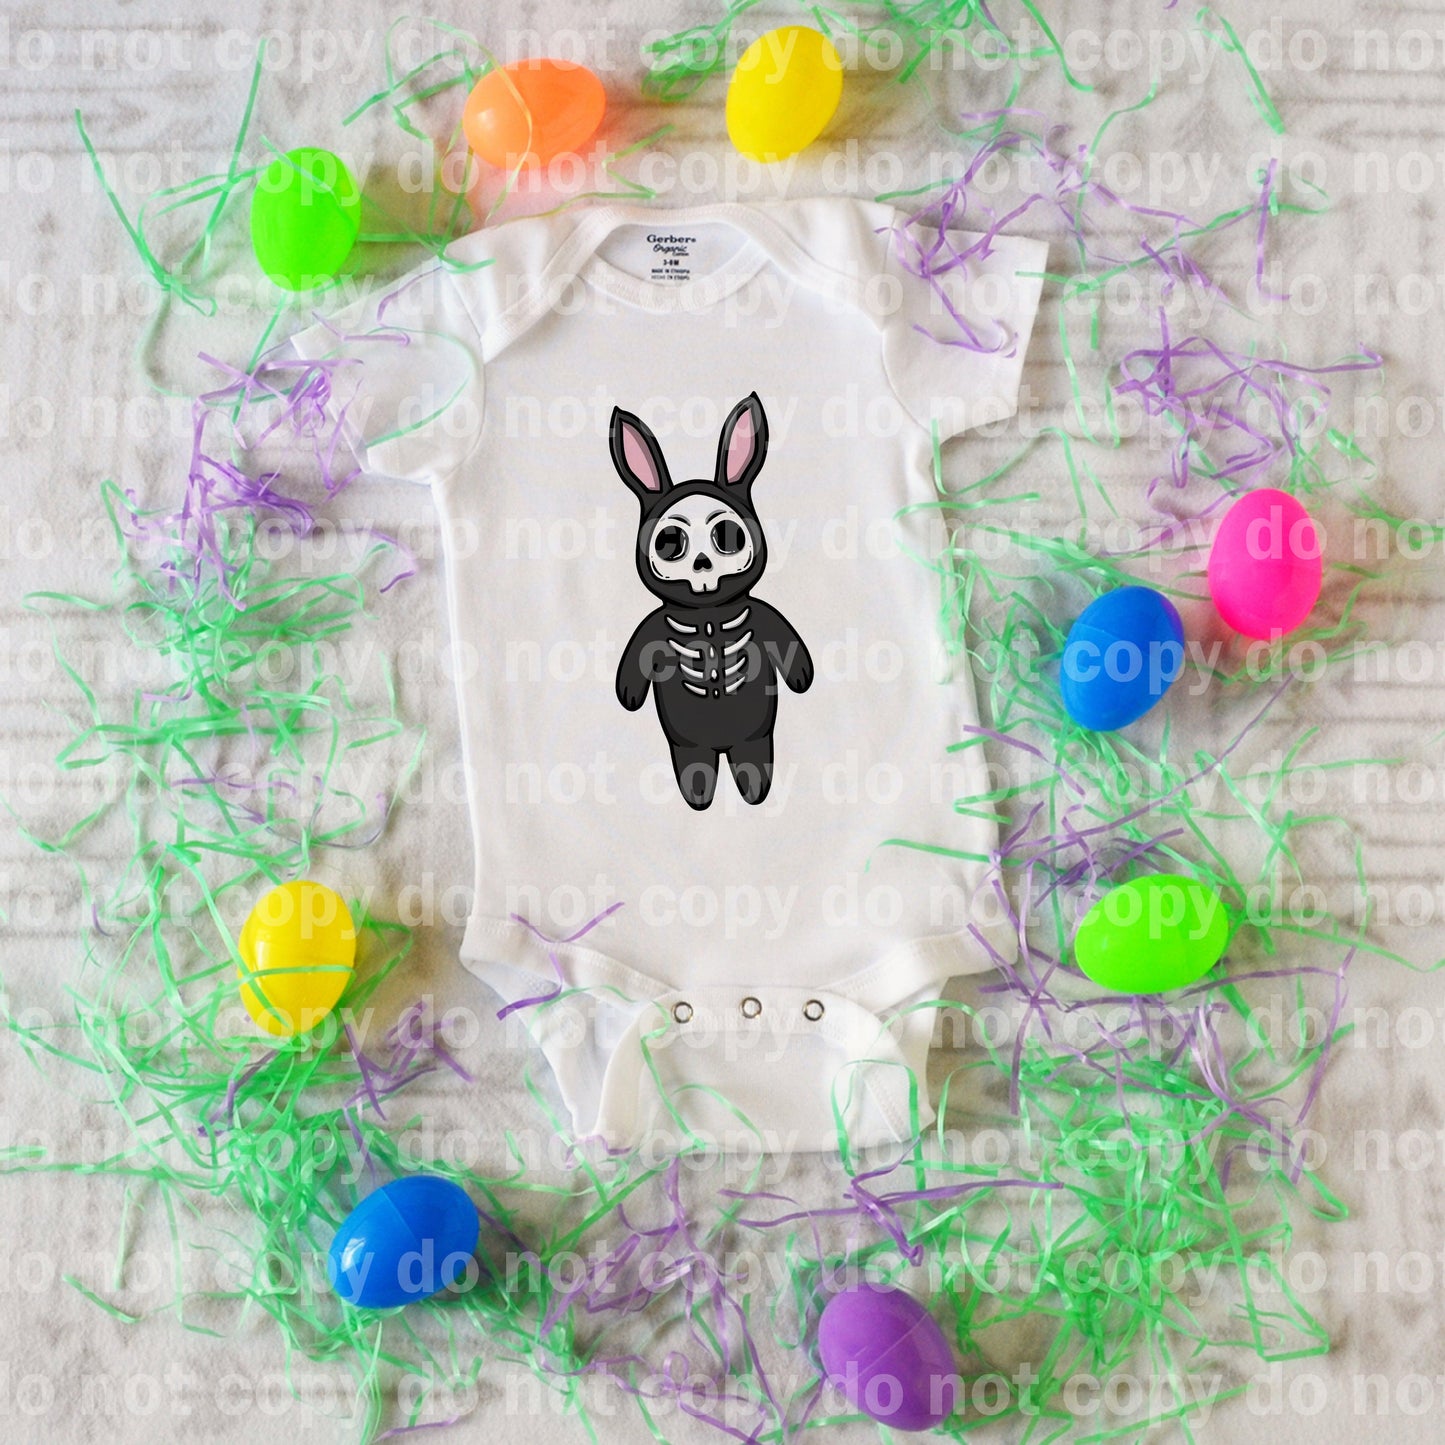 Bunny Teddy Dream Print or Sublimation Print